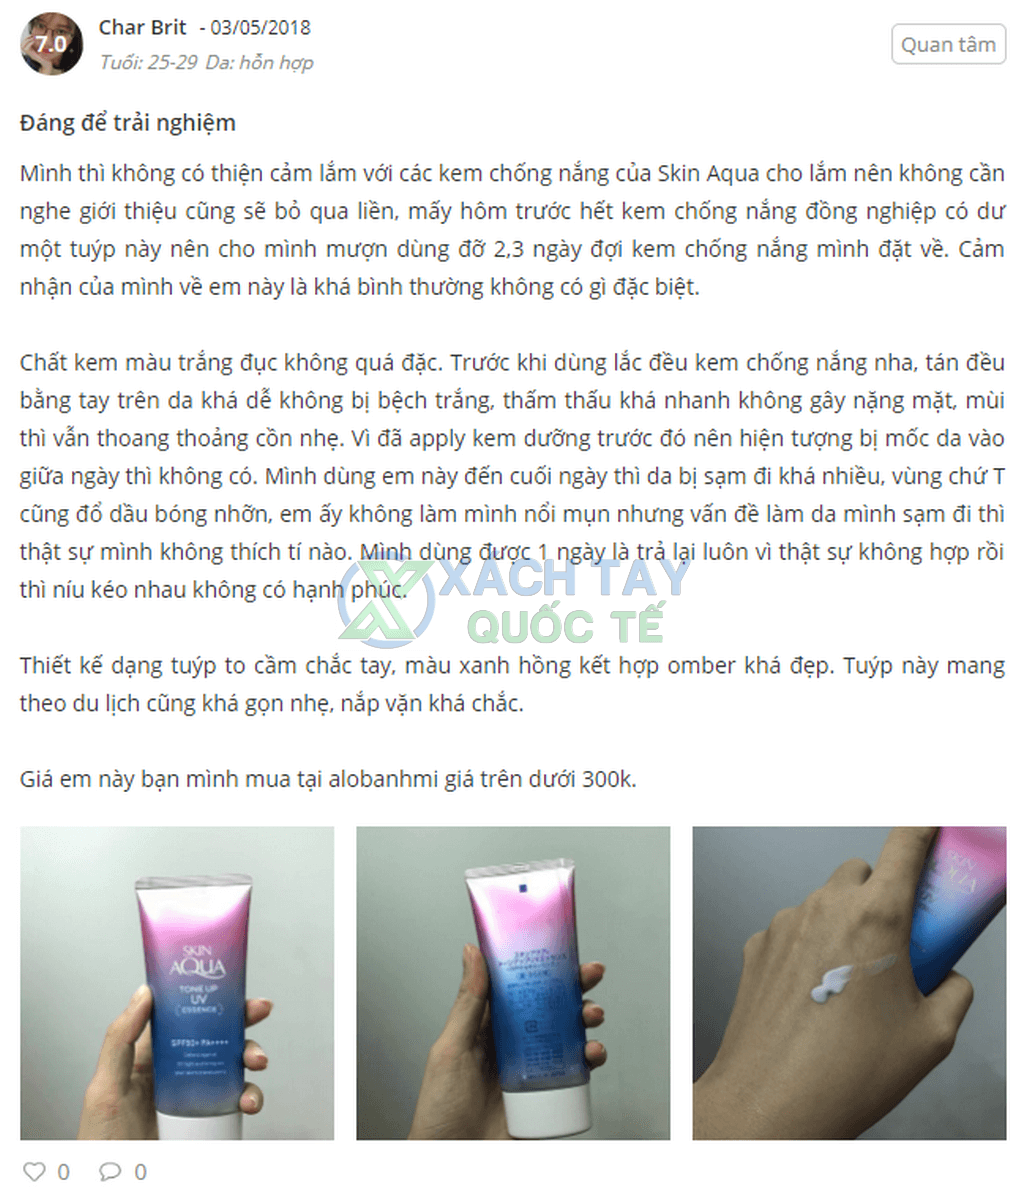 Review Kem chống nắng Skin Aqua Tone Up UV Essence Nhật Bản